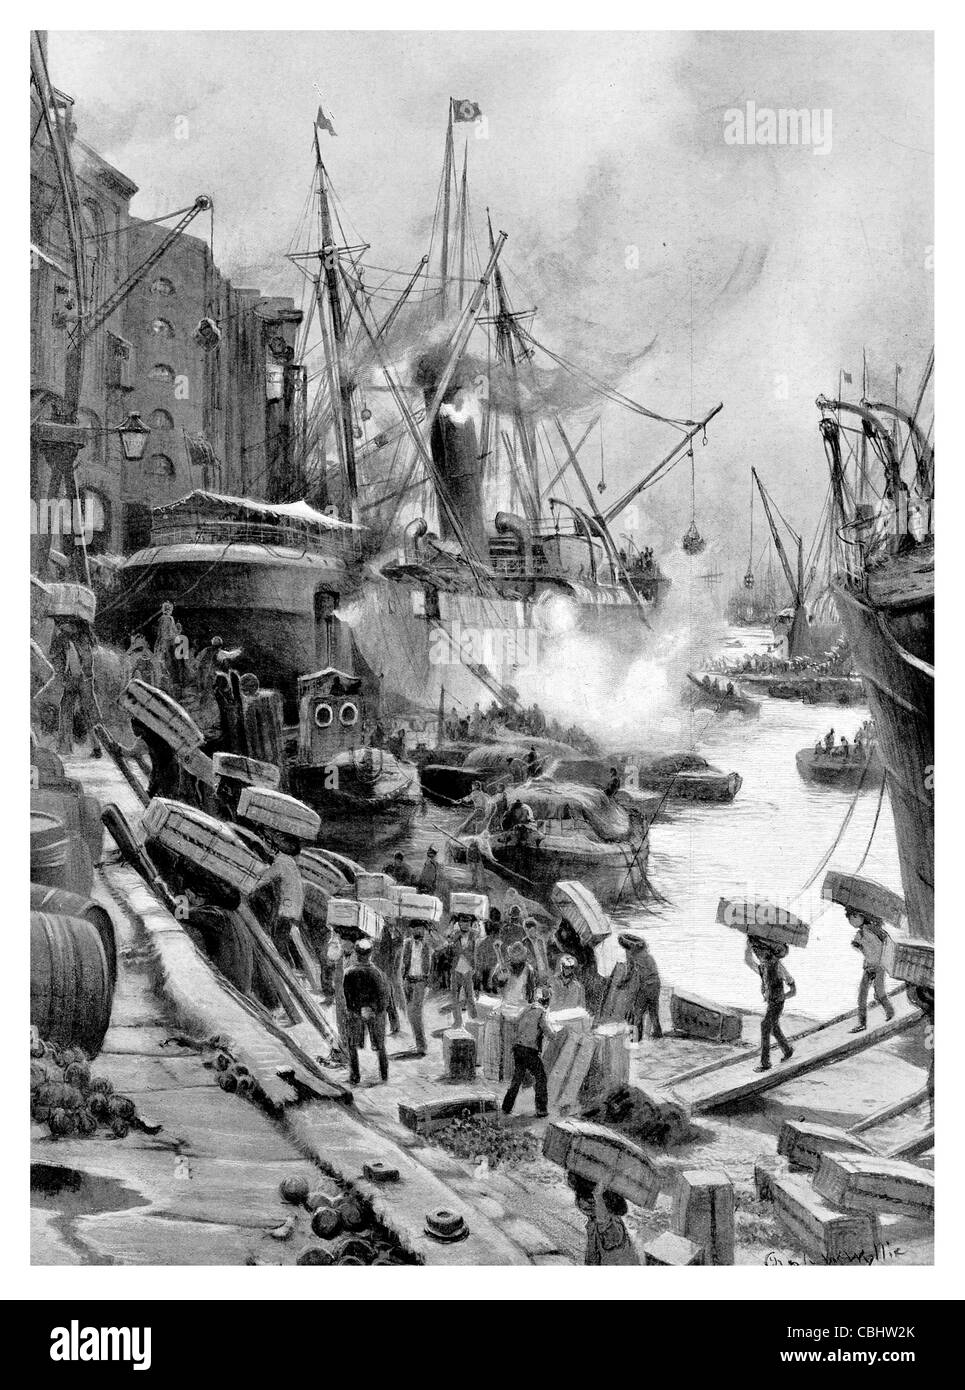 Port de Londres au quai de déchargement des oranges fraîches Tamise Angleterre matériel en vrac d'un navire de commerce Banque D'Images